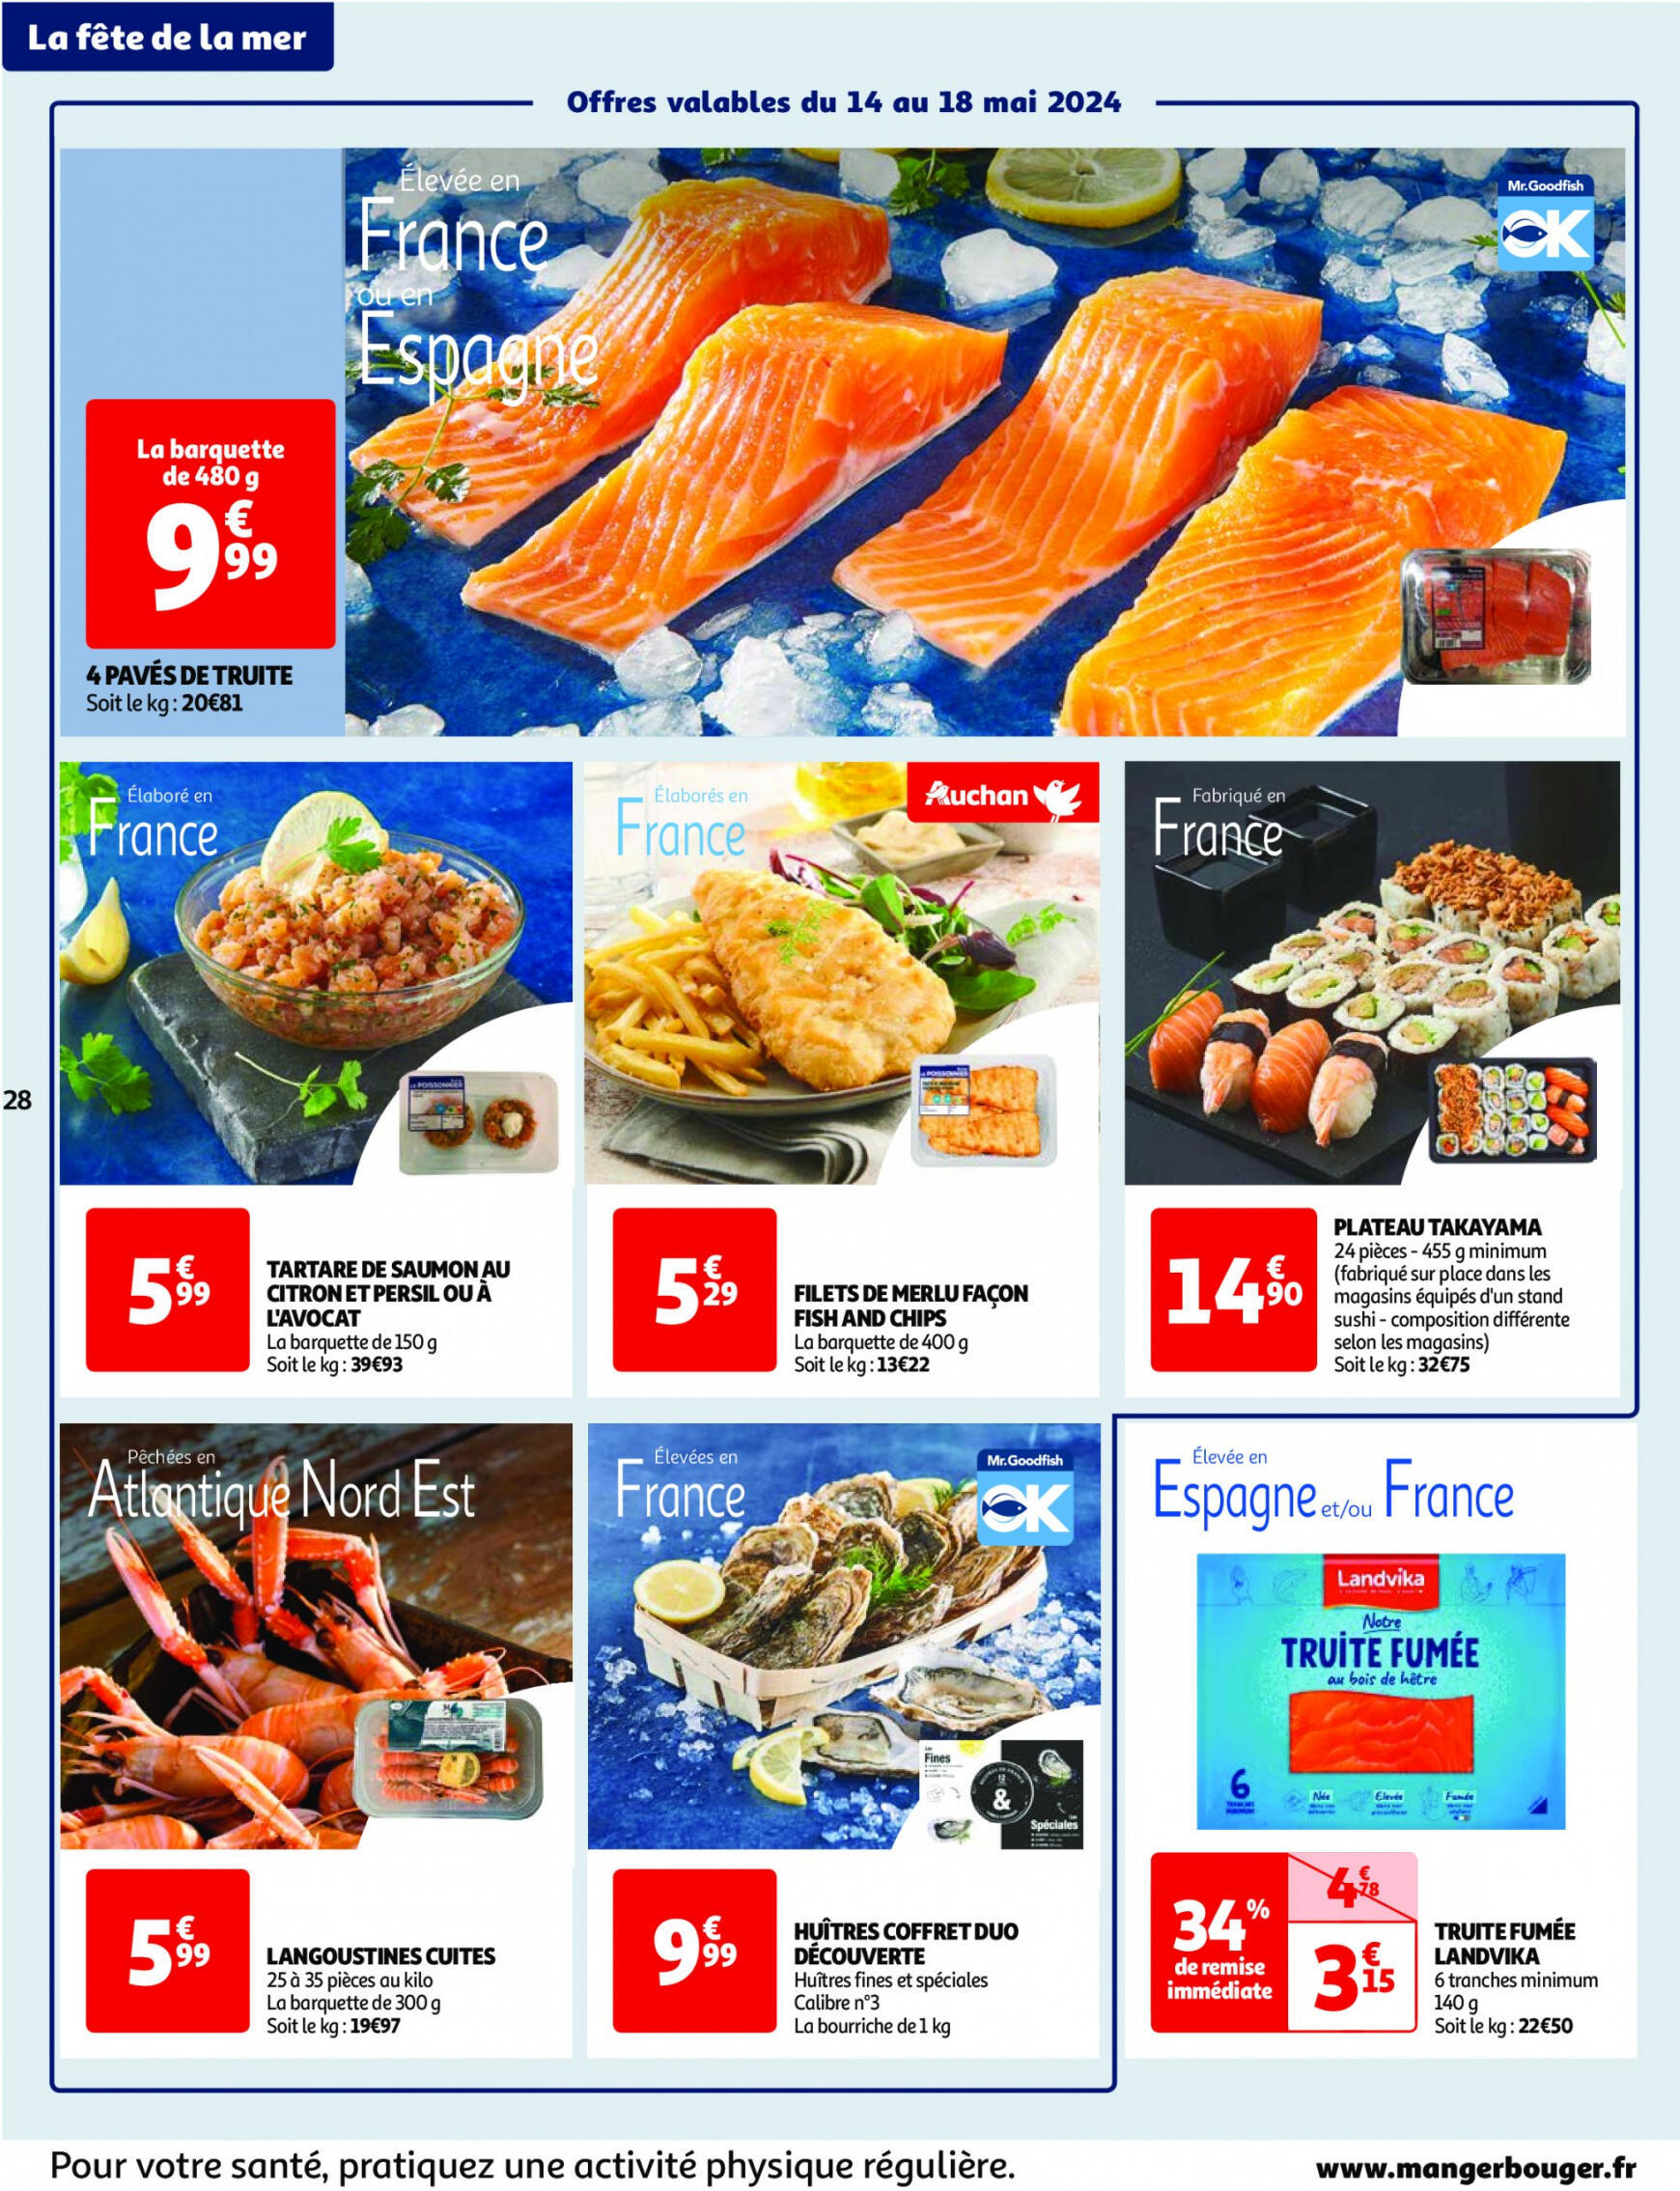 auchan - Auchan - Nos surgelés ont tout bon folder huidig 14.05. - 21.05. - page: 28